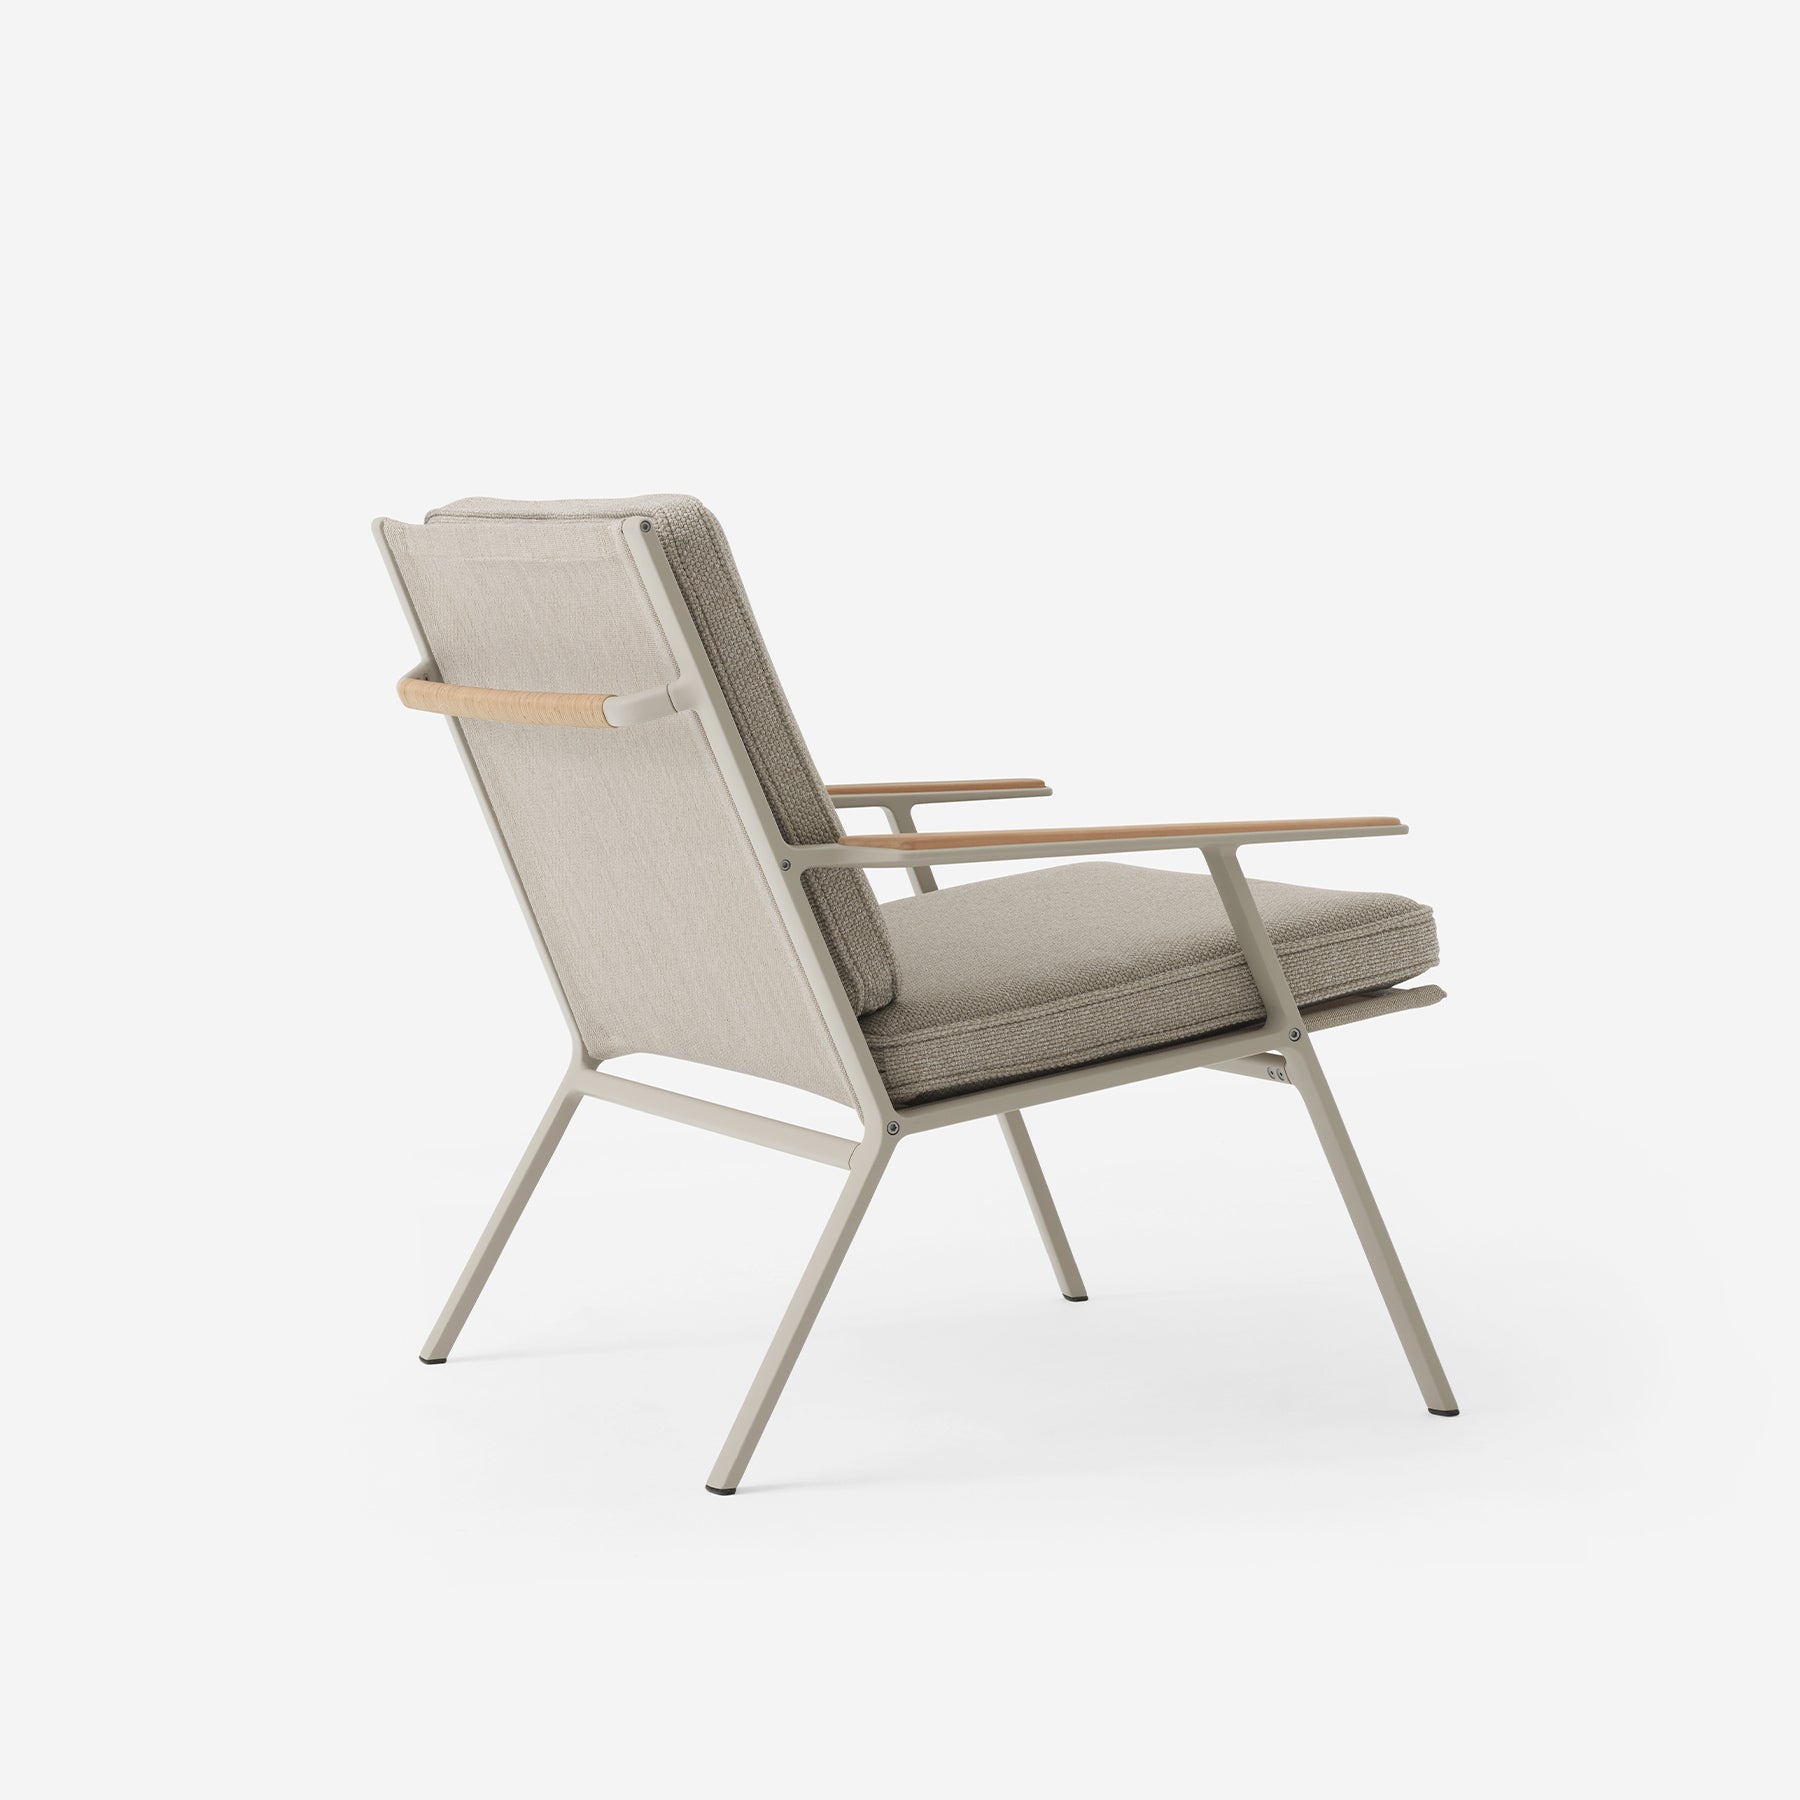 VIPP713 Open-Air lounge chair - Moleta Munro Limited